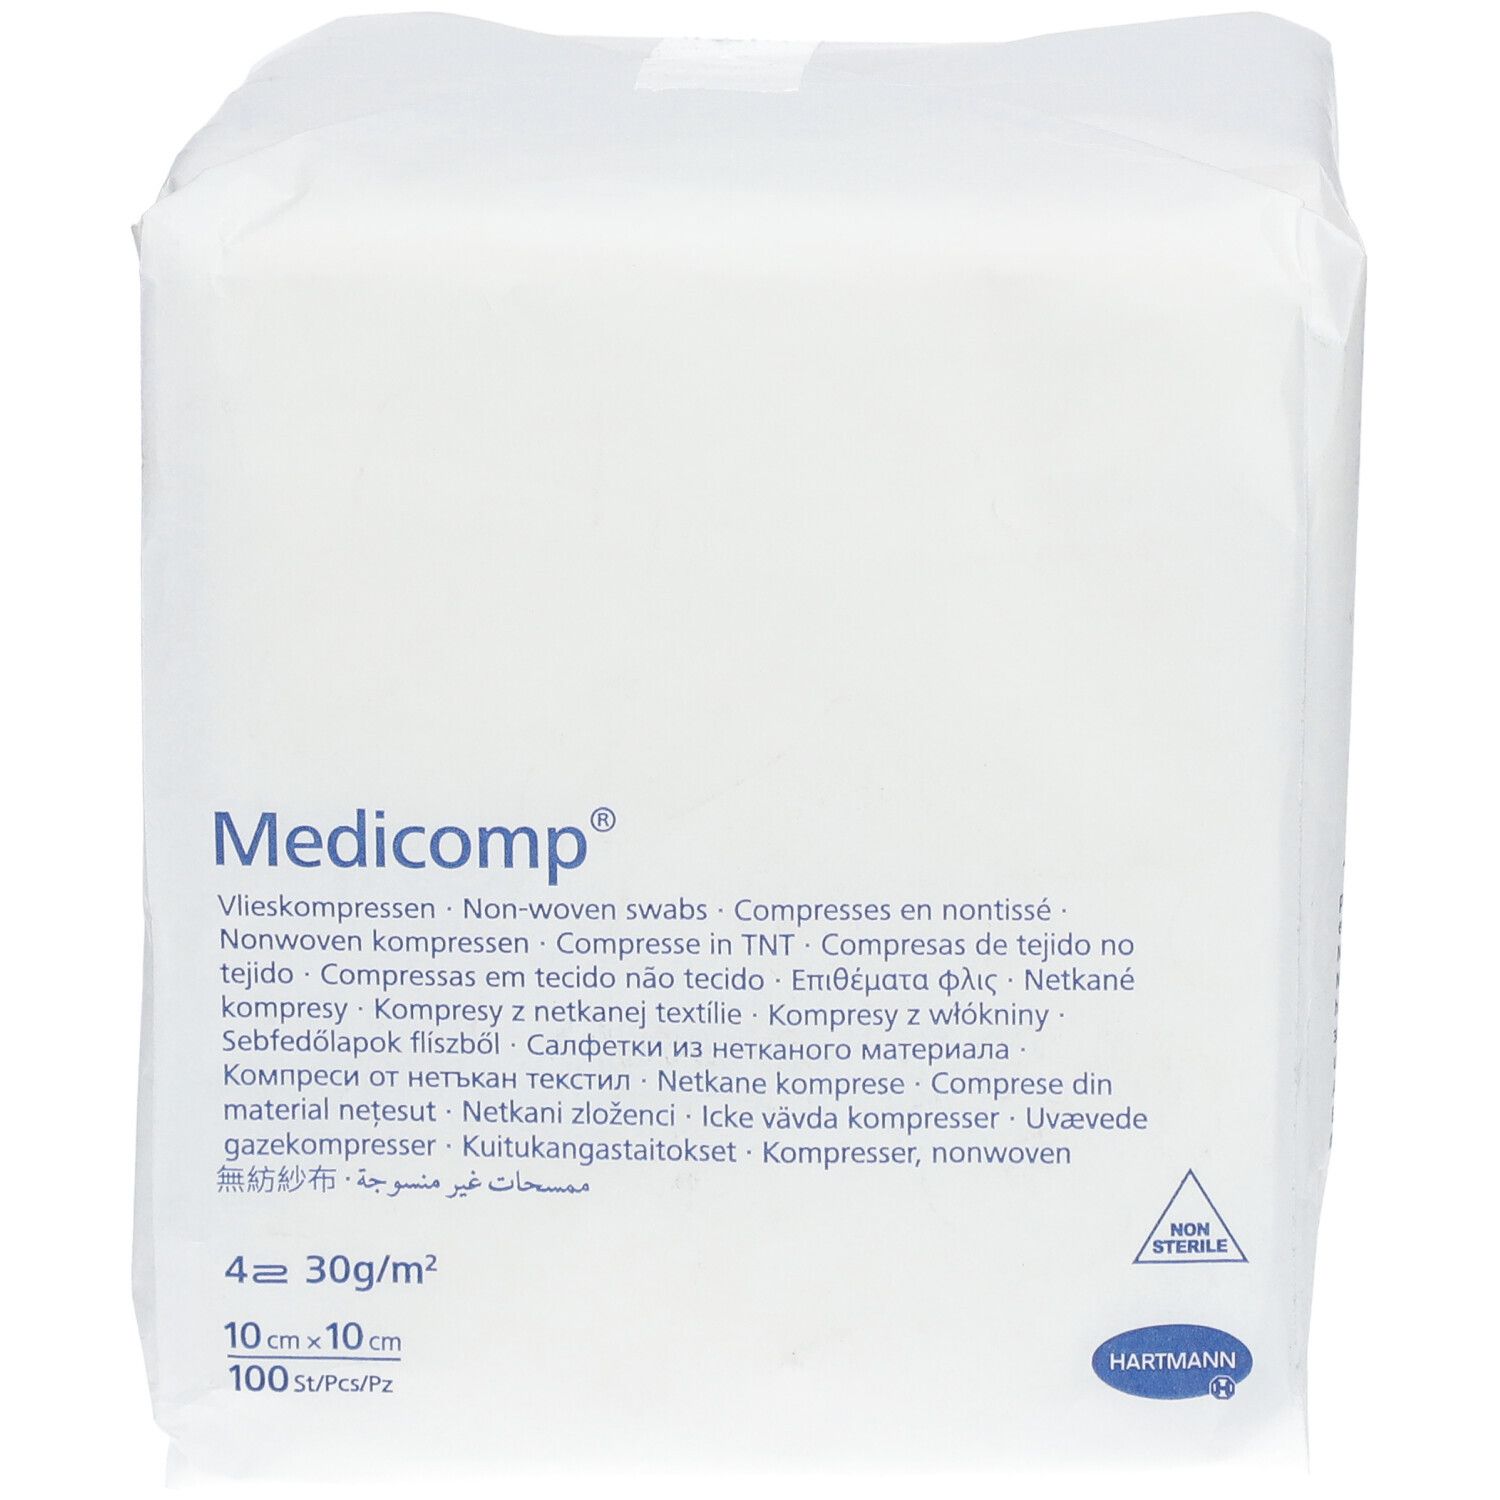 Hartmann Medicomp® 10 cm x 10 cm Garza in TNT non sterile